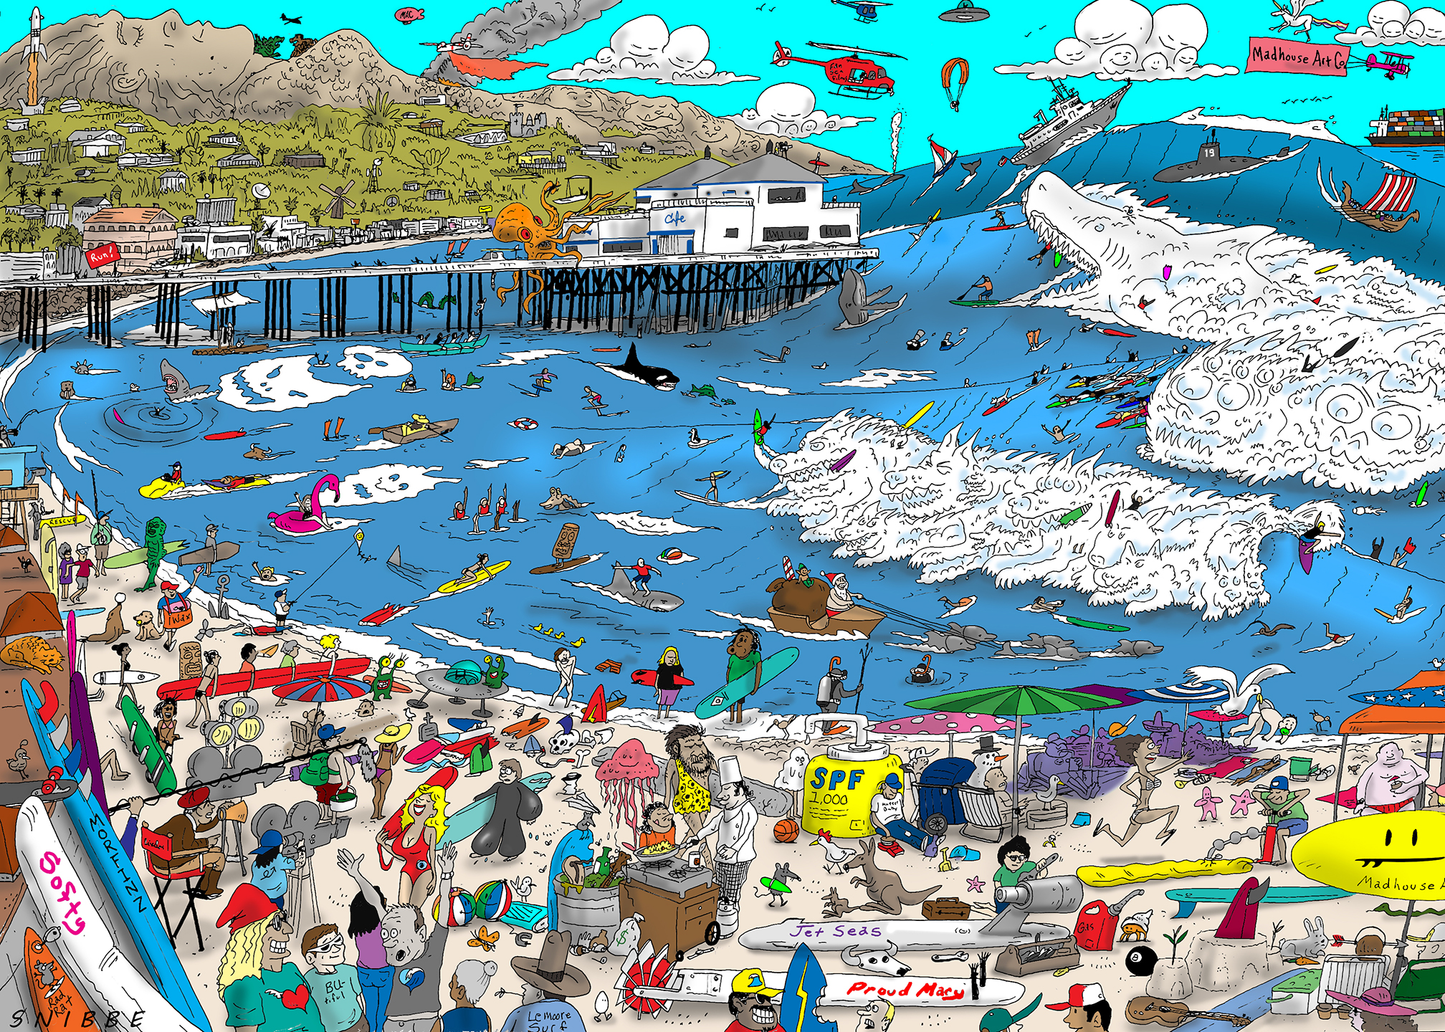 Malibu Beach 1,000 piece jigsaw puzzle